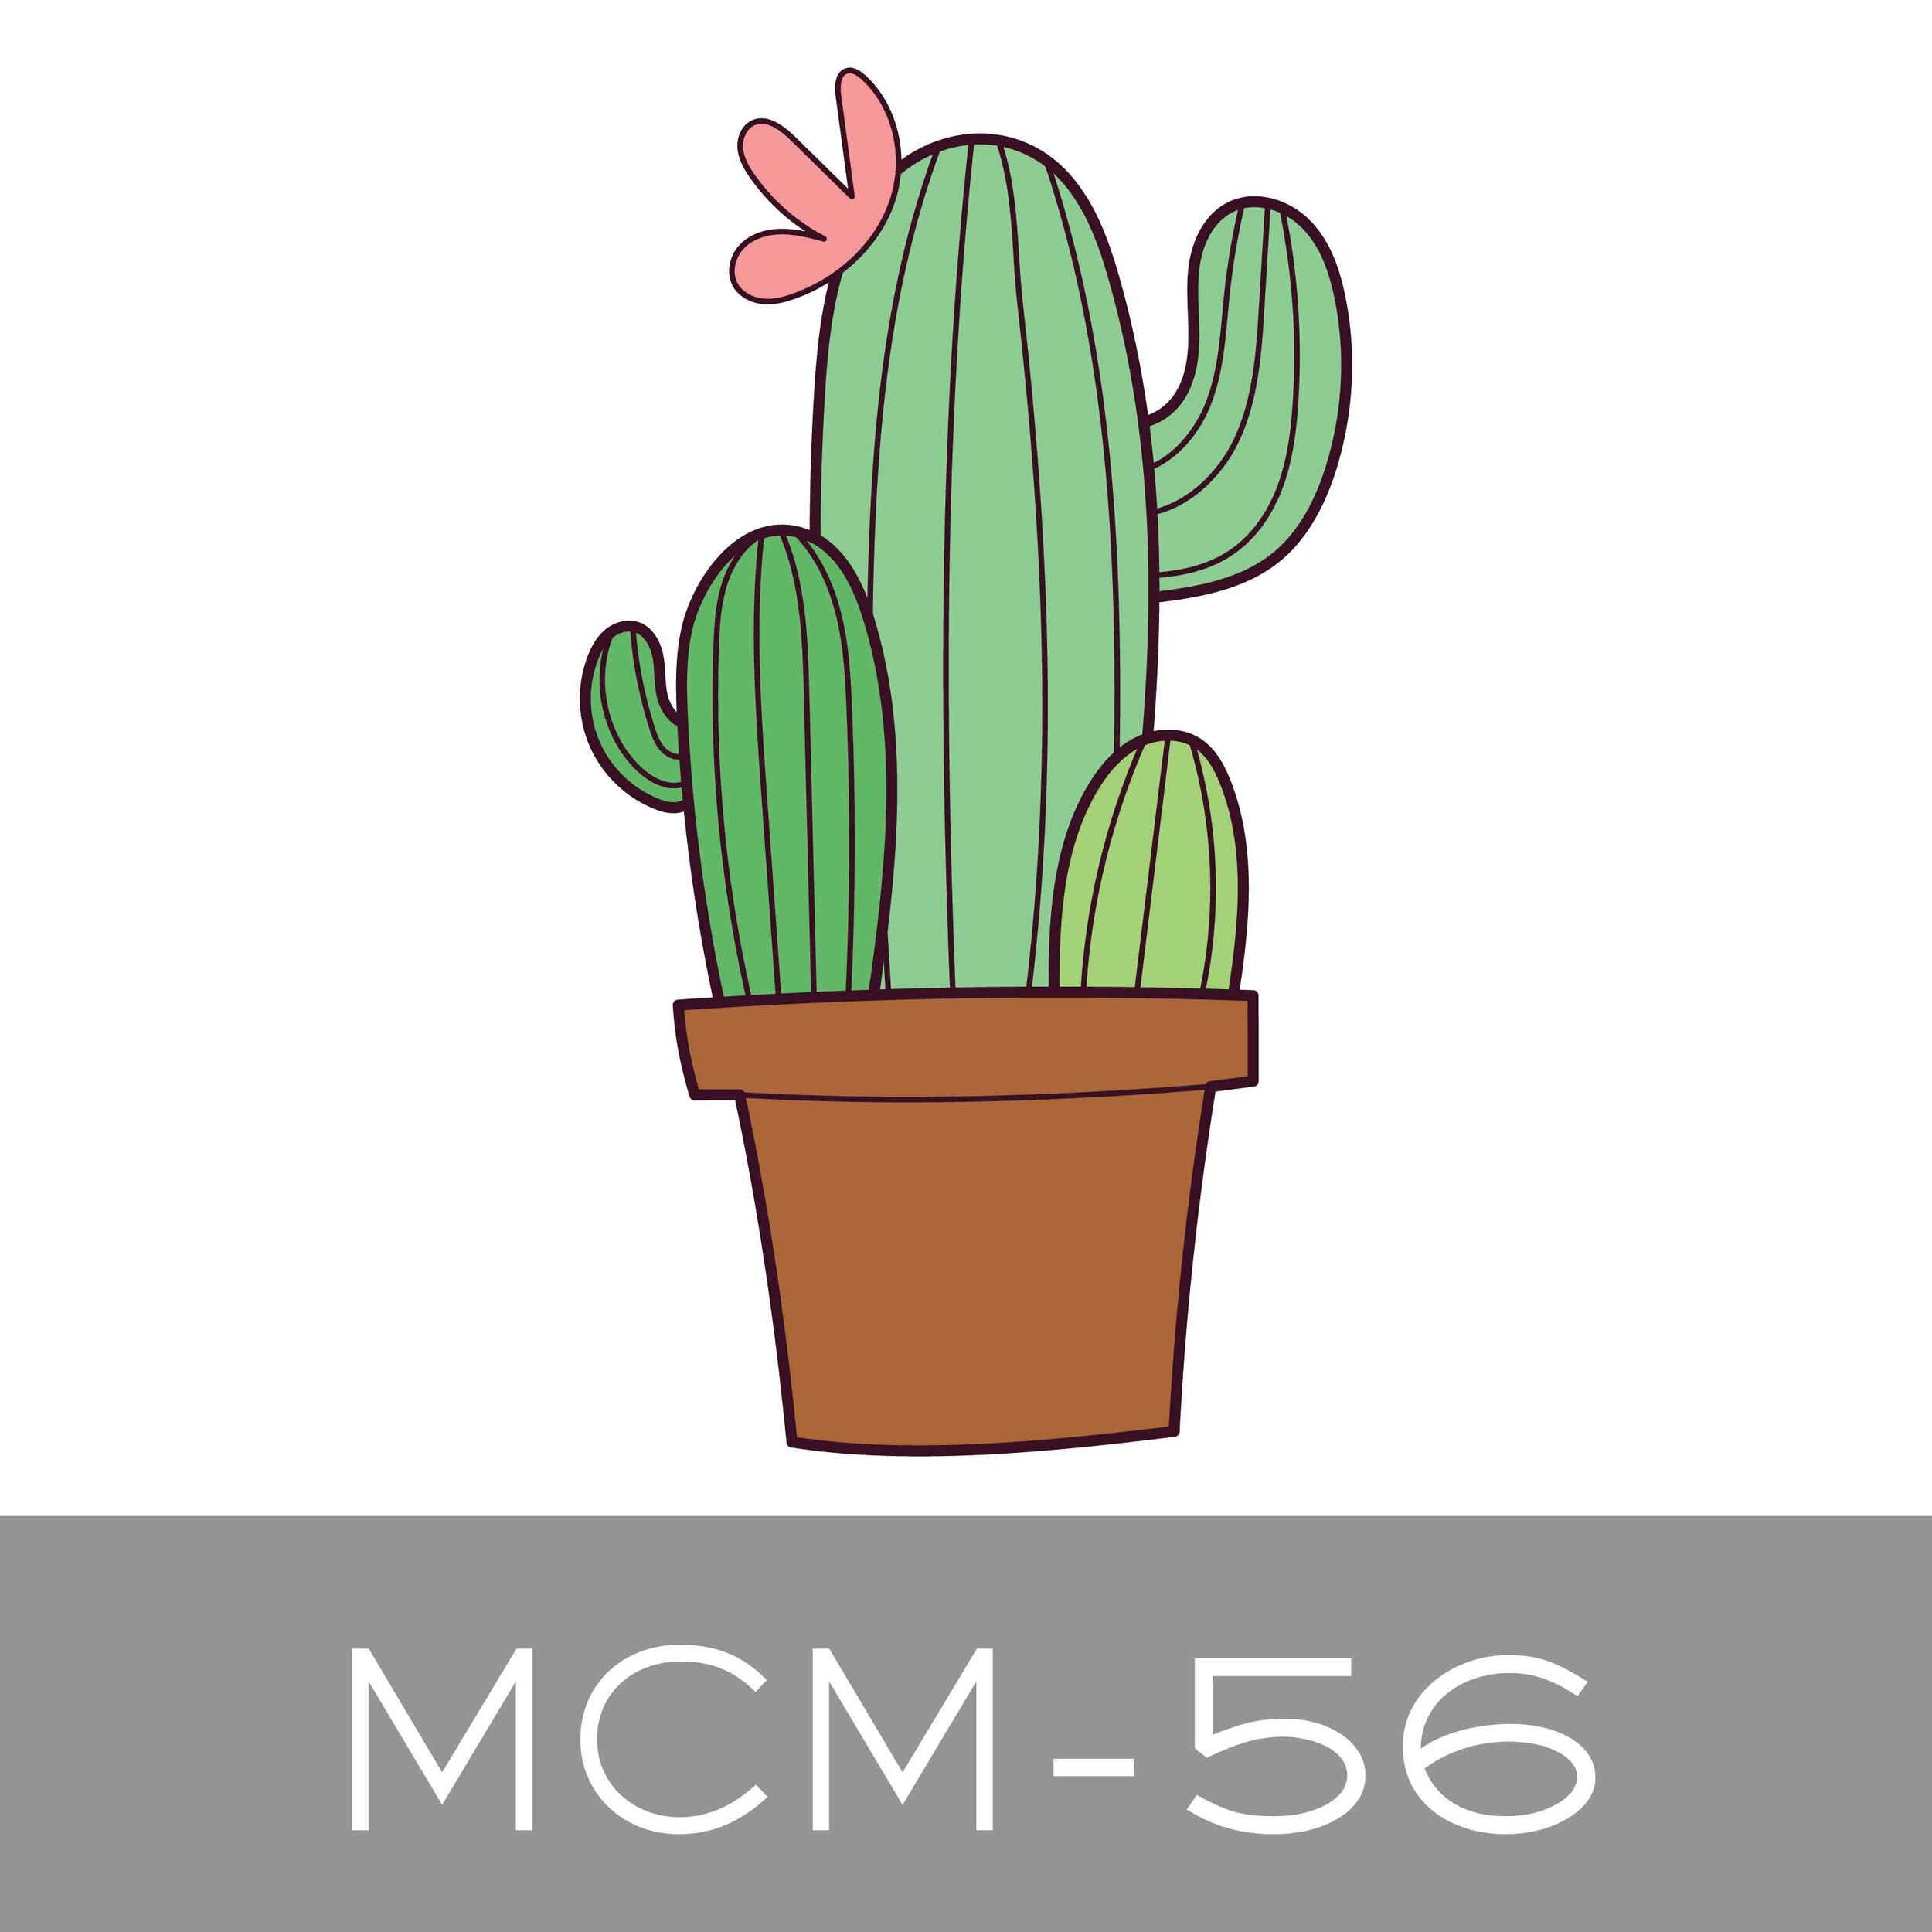 MCM-56.jpg